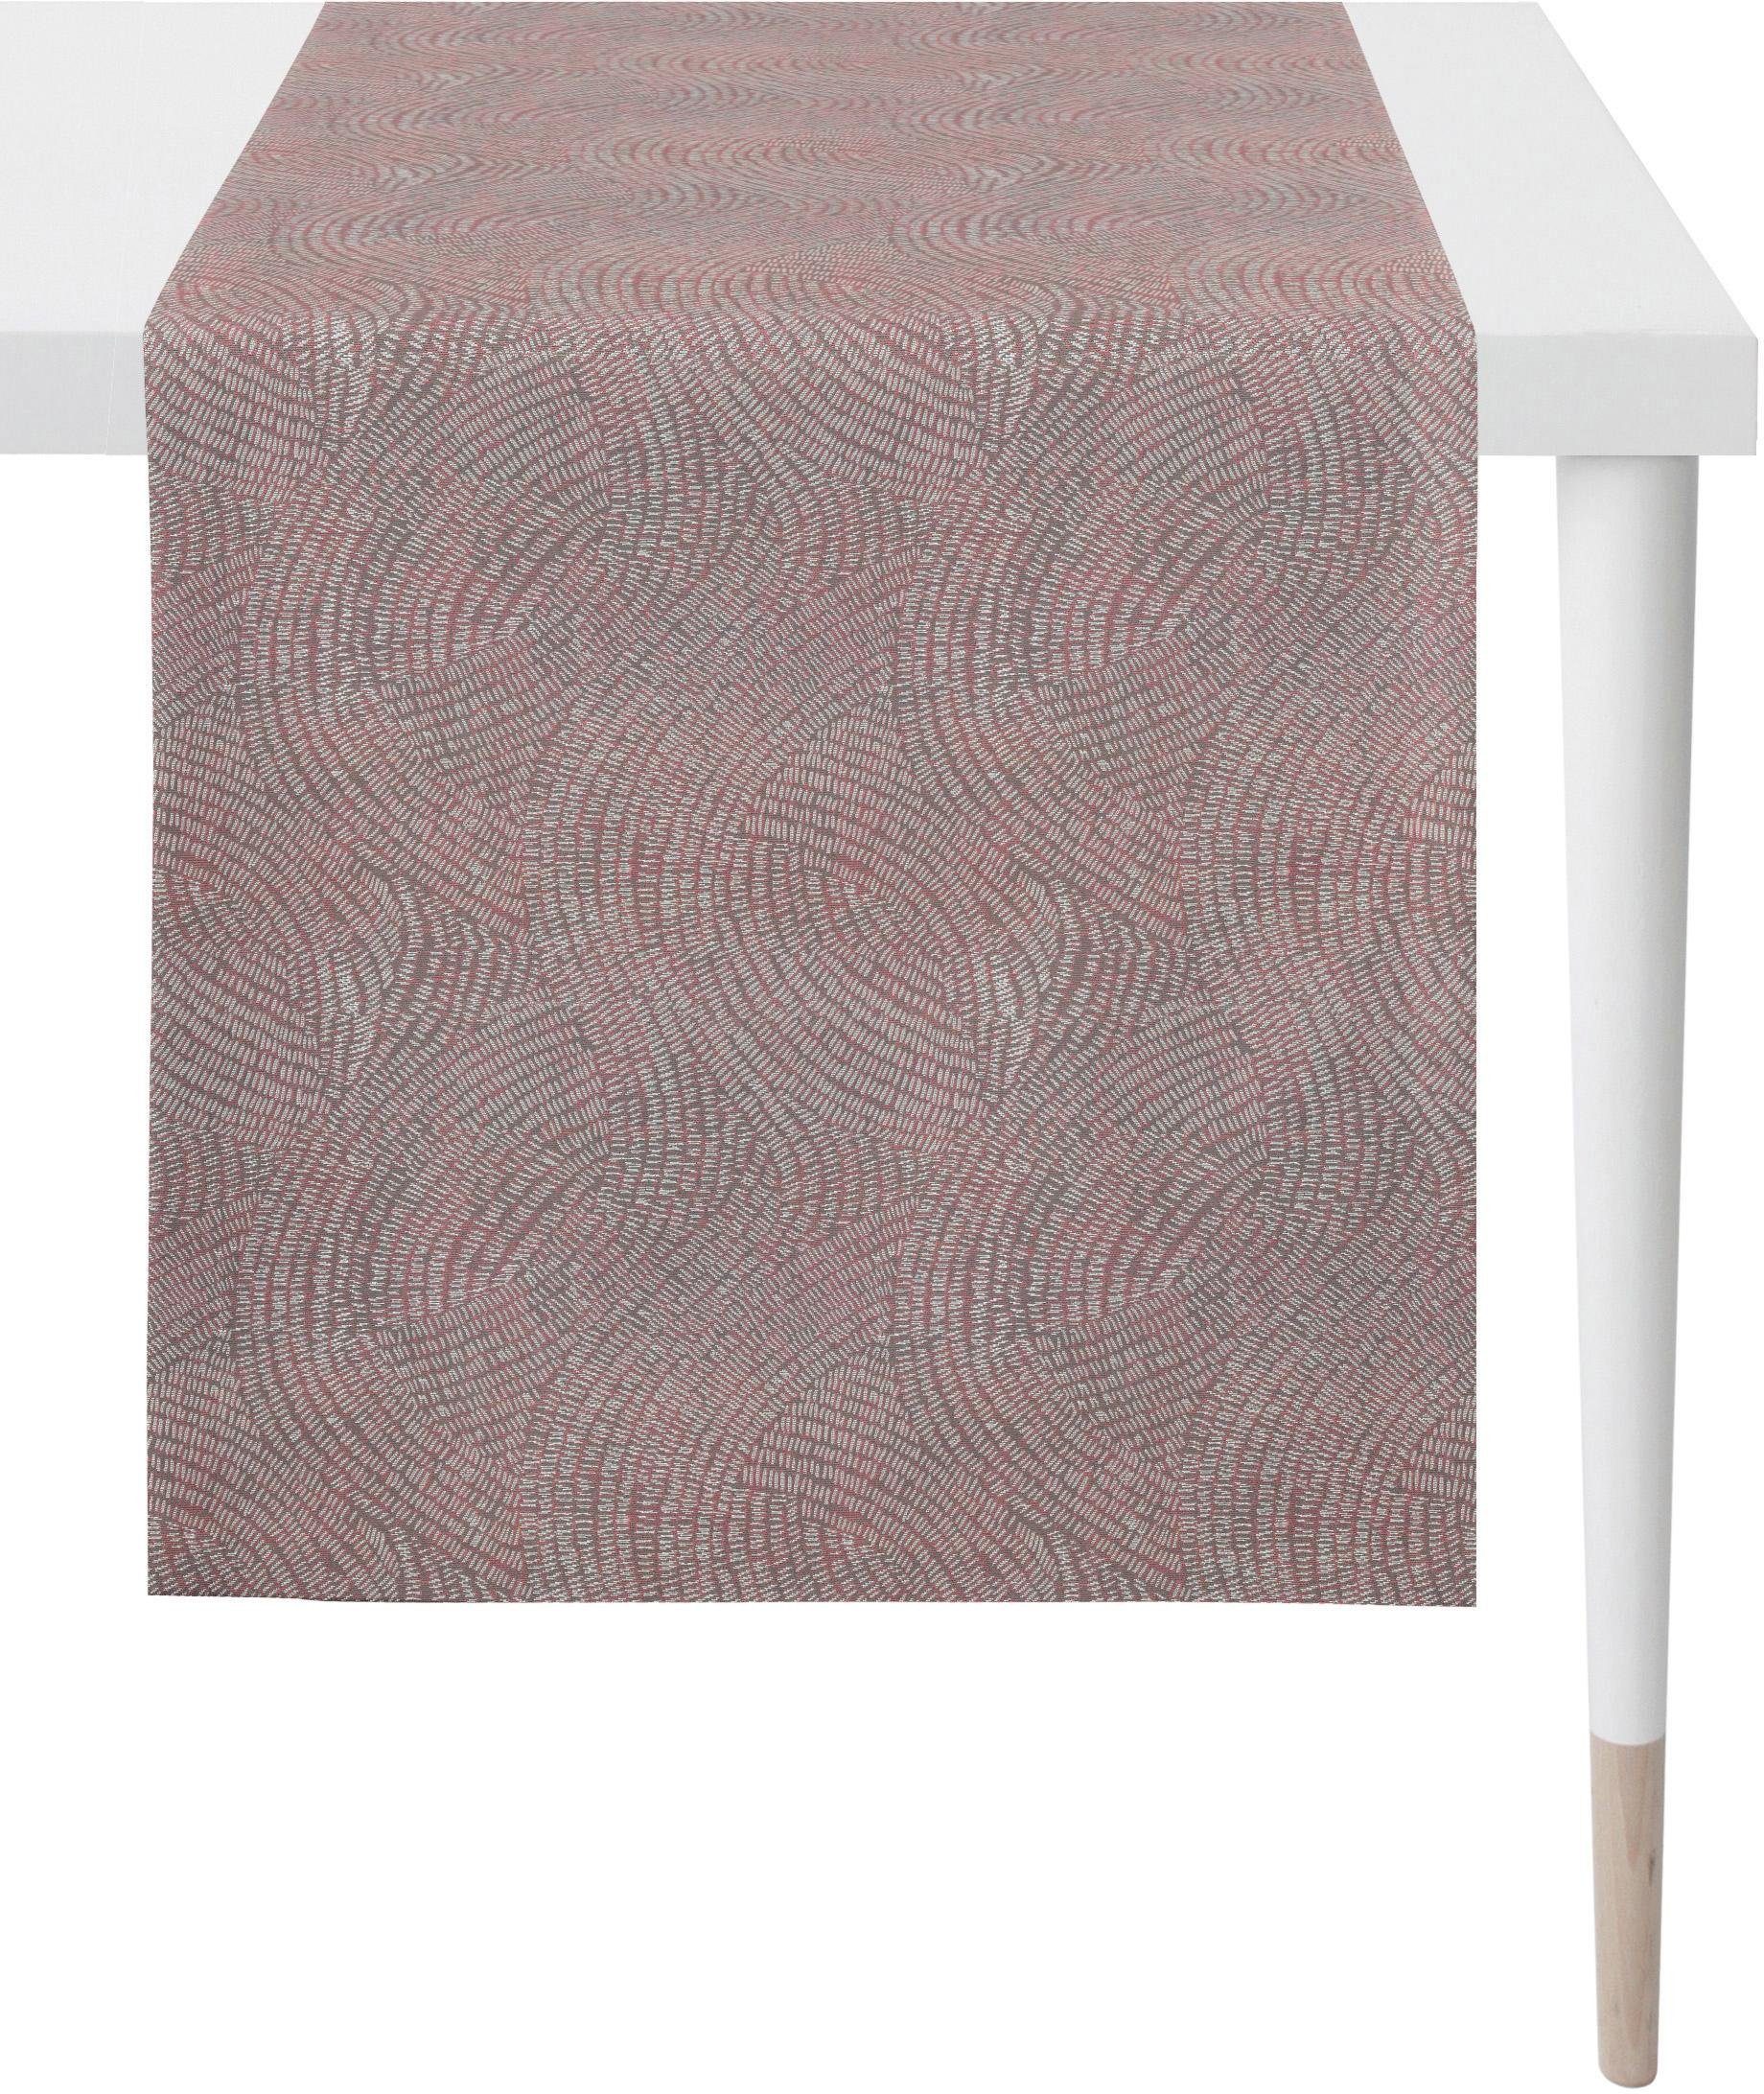 APELT Tischläufer 1102 Loft Style, Jacquard (1-tlg) rosa/grau